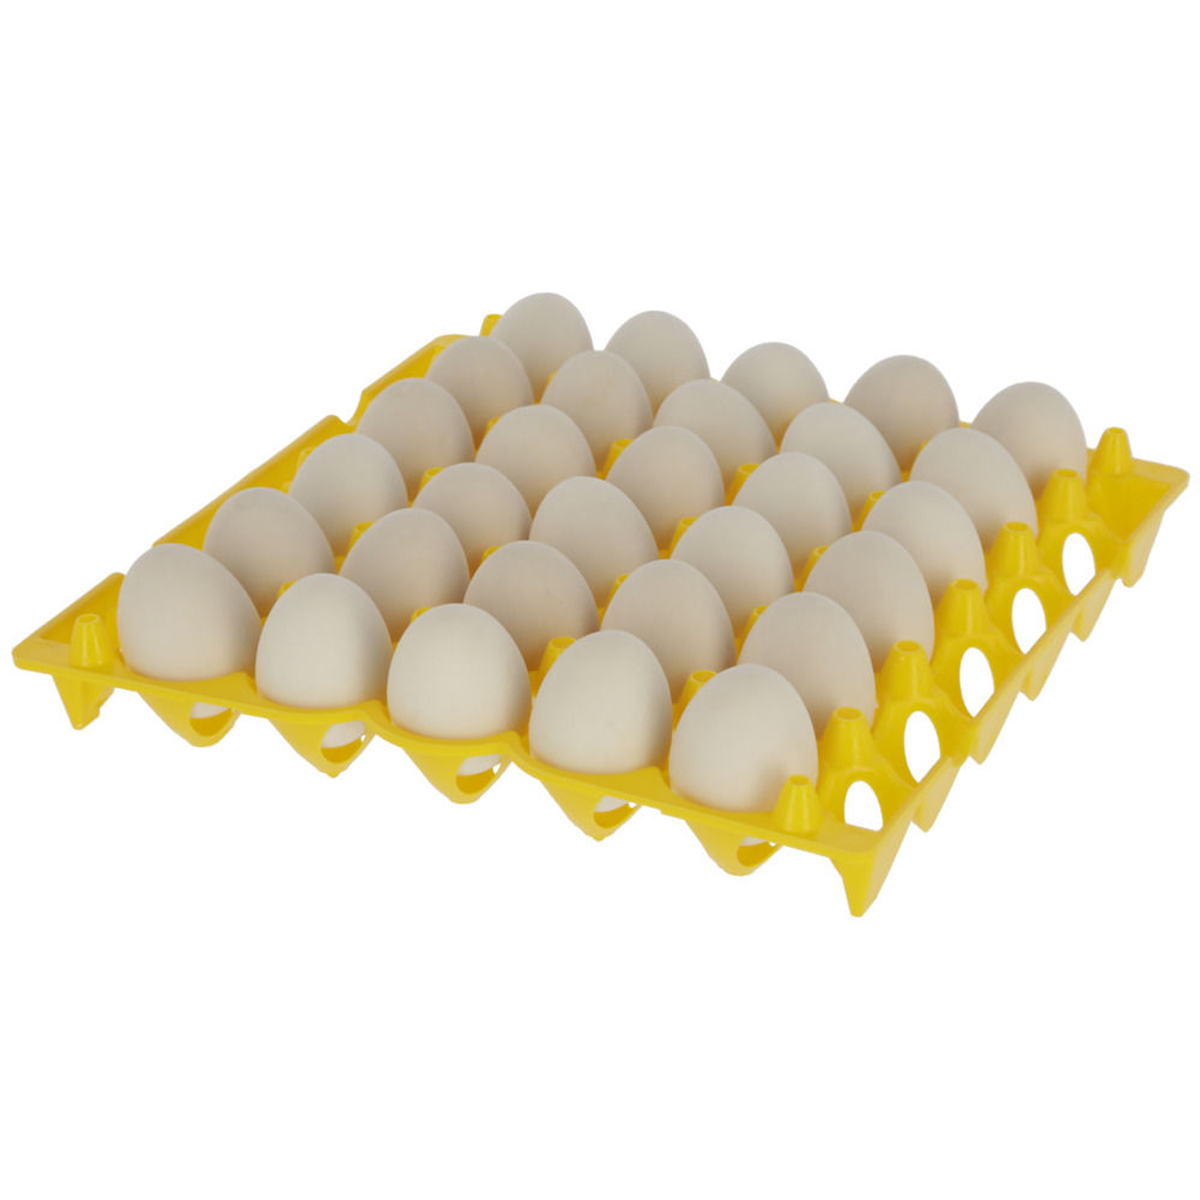 Egg storage